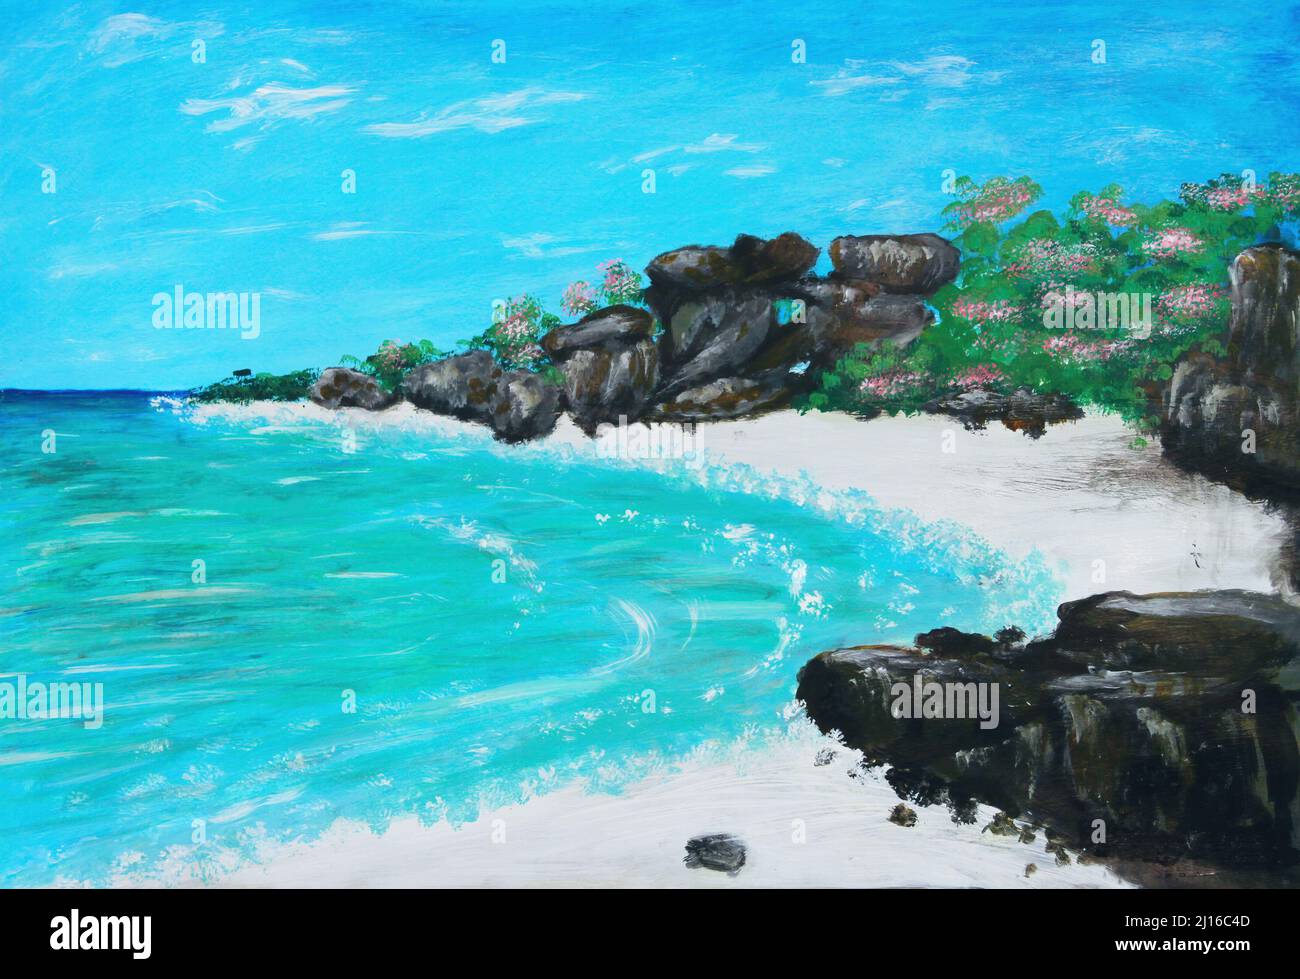 Peinture à l'huile sur toile de crique tropicale isolée avec blanc plage de sable et rive rocheuse Banque D'Images